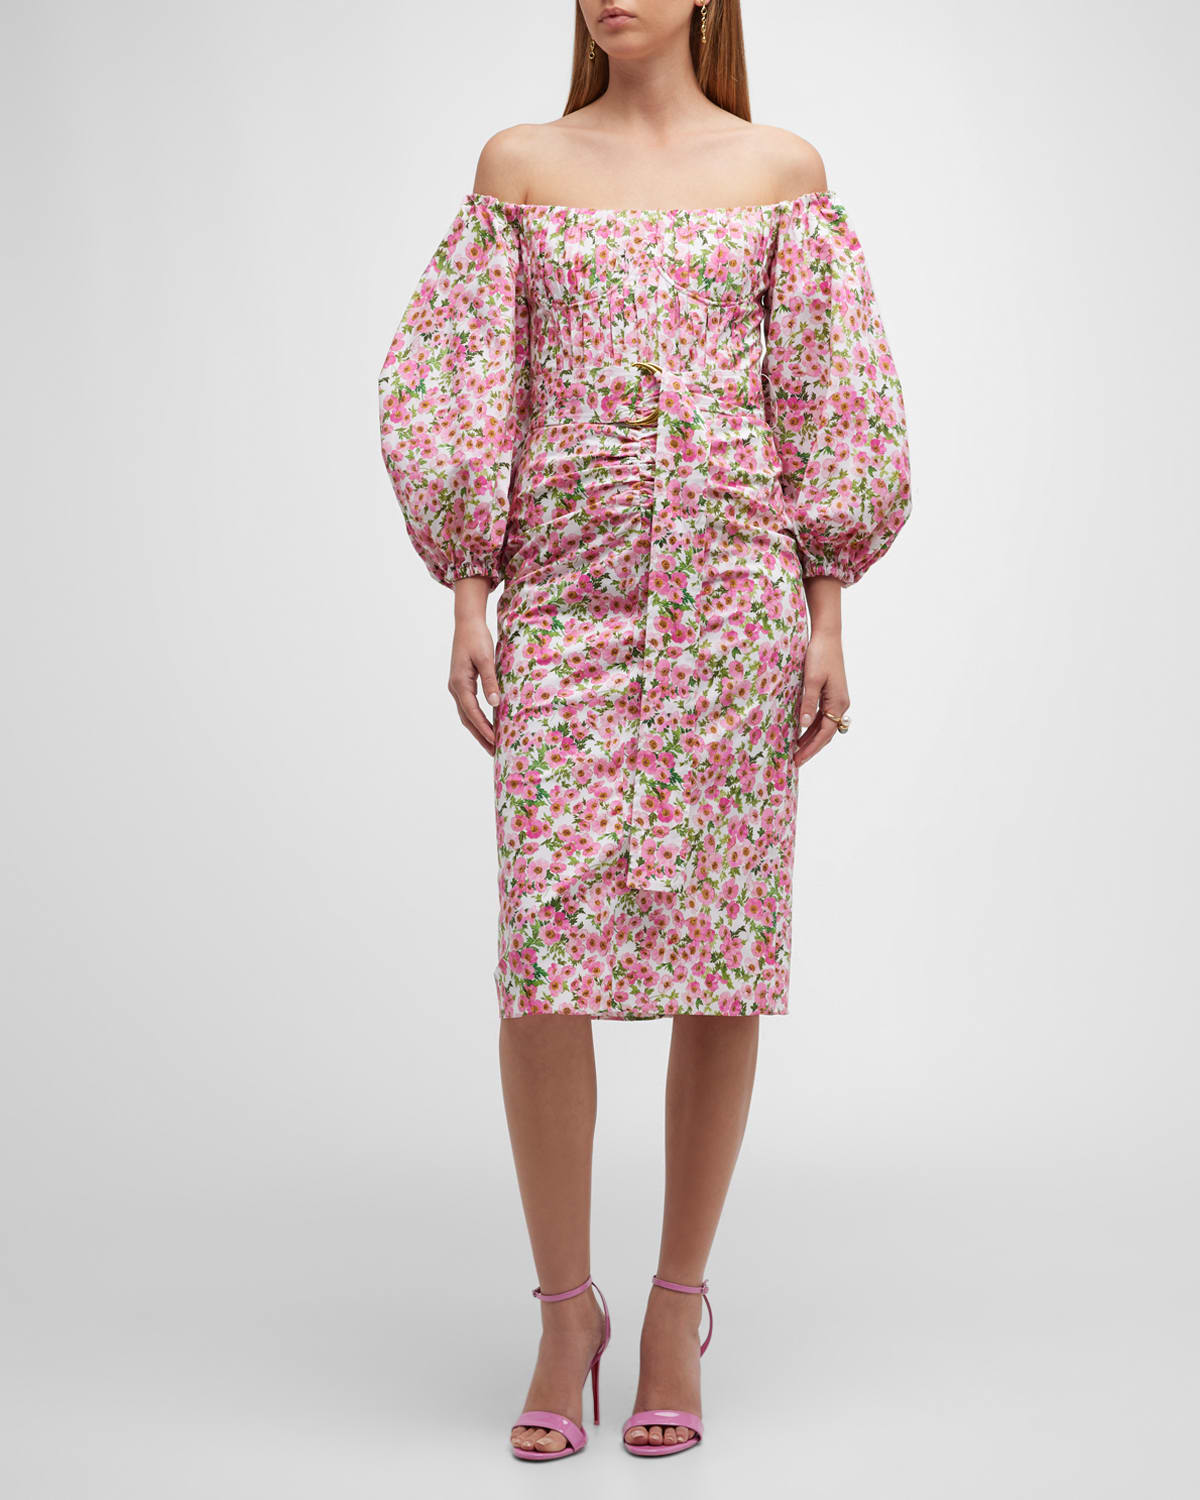 Carolina Herrera Floral Print Bustier Midi Dress w/ Front Cutout ...